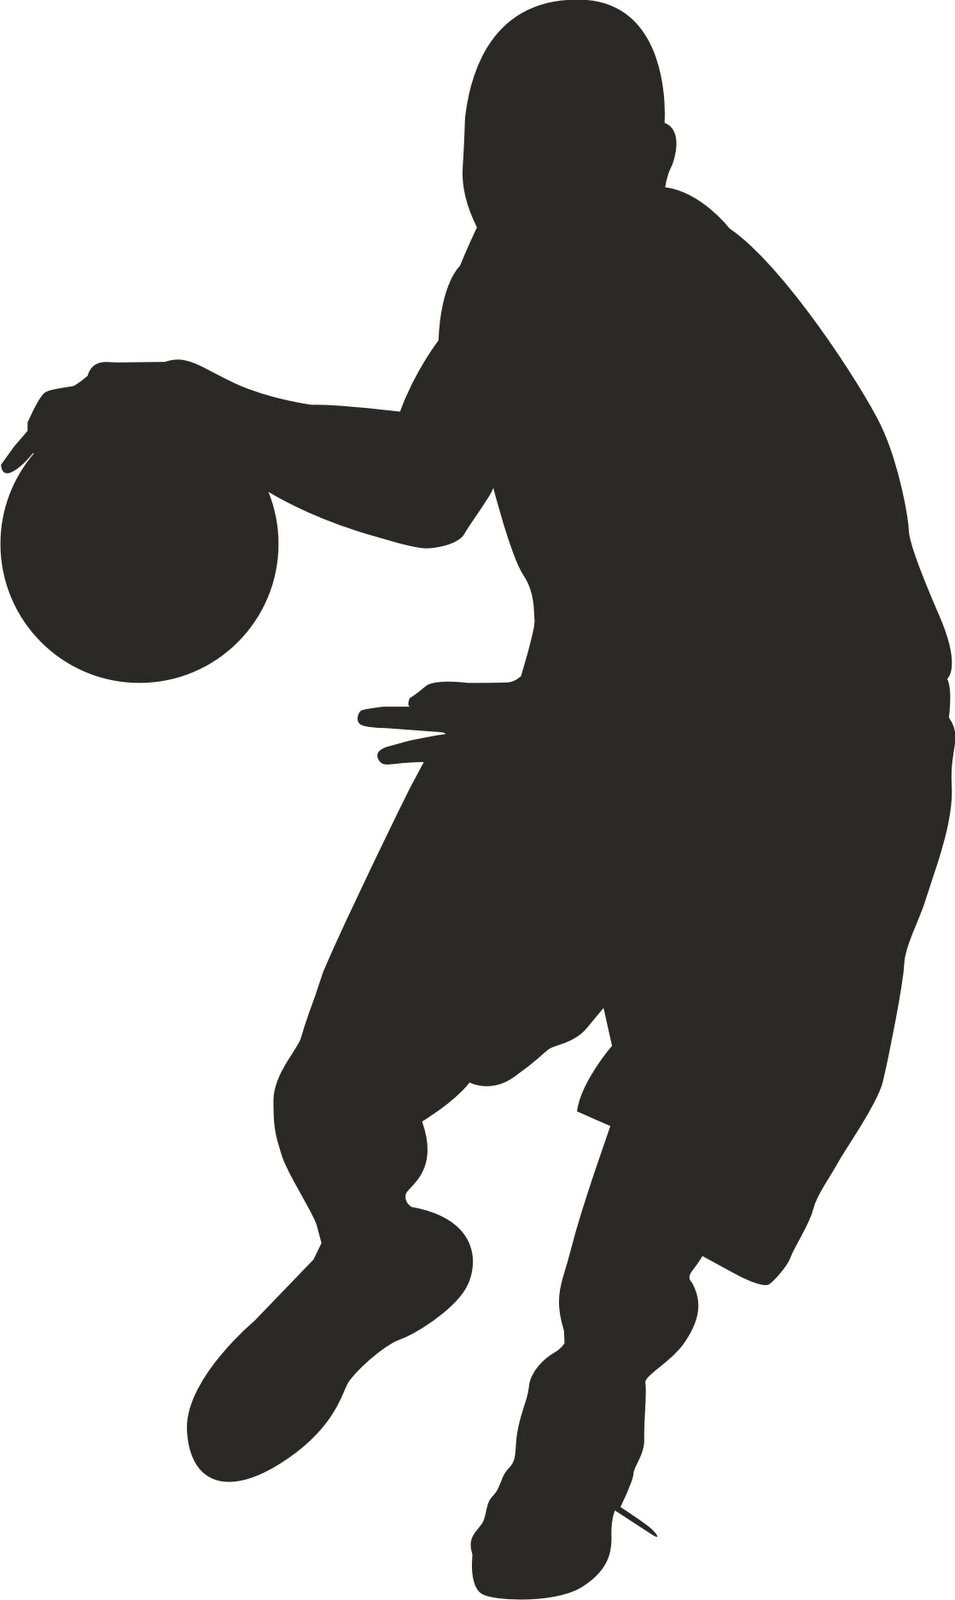 Basketball Player Clipart #1 - Clip Art Pin